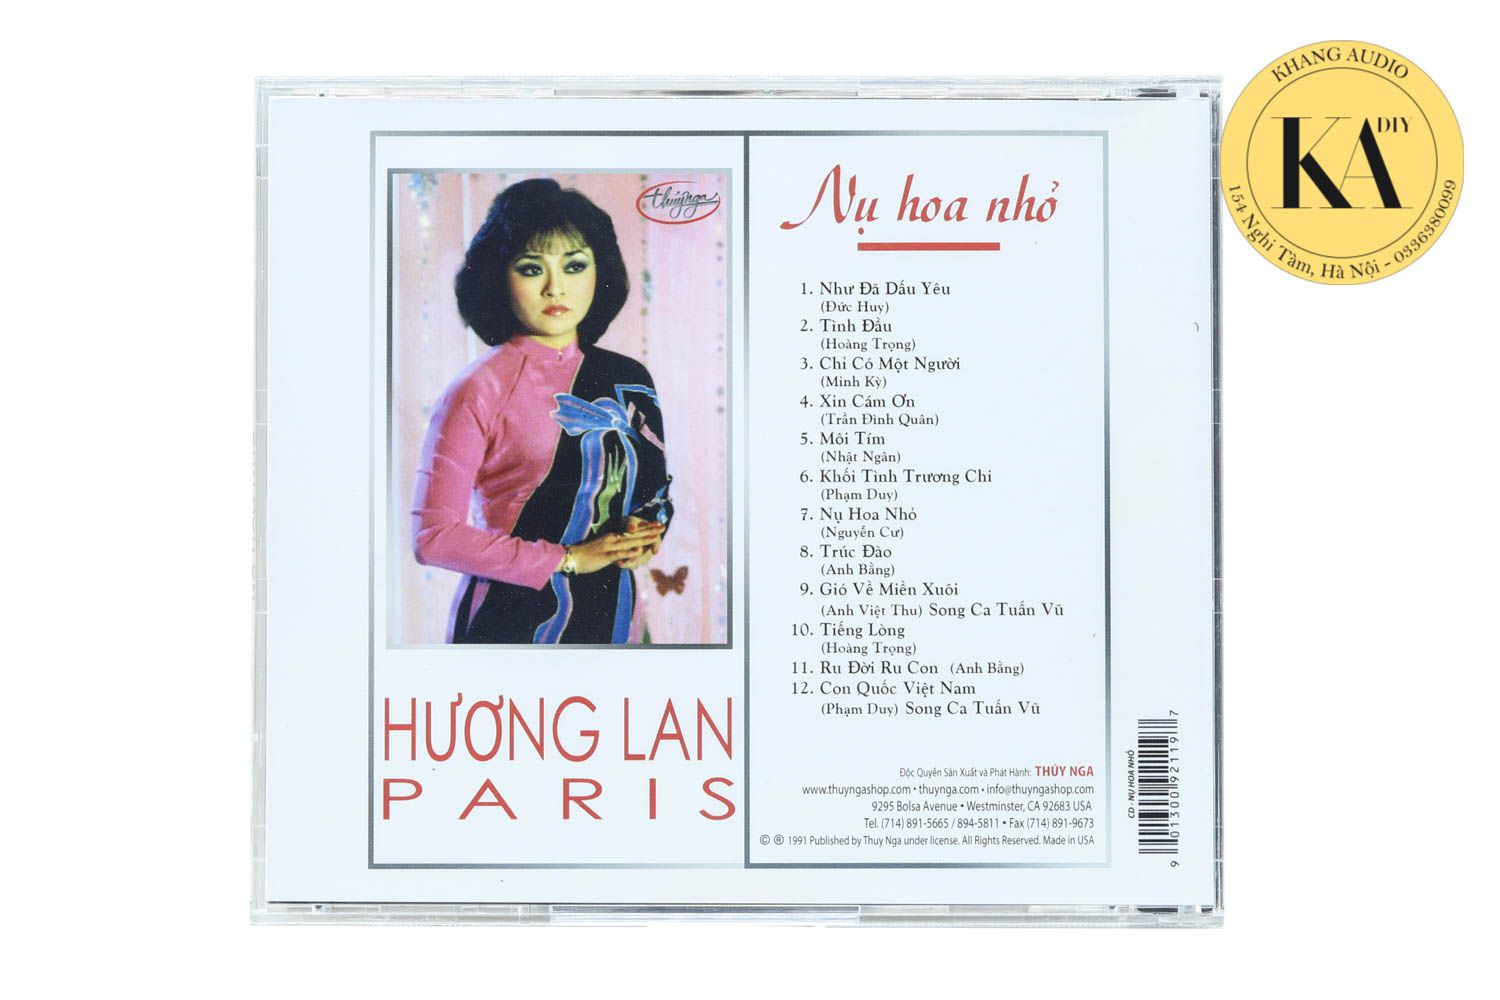 Nụ Hoa Nhỏ - Hương Lan Khang Audio 0336380099